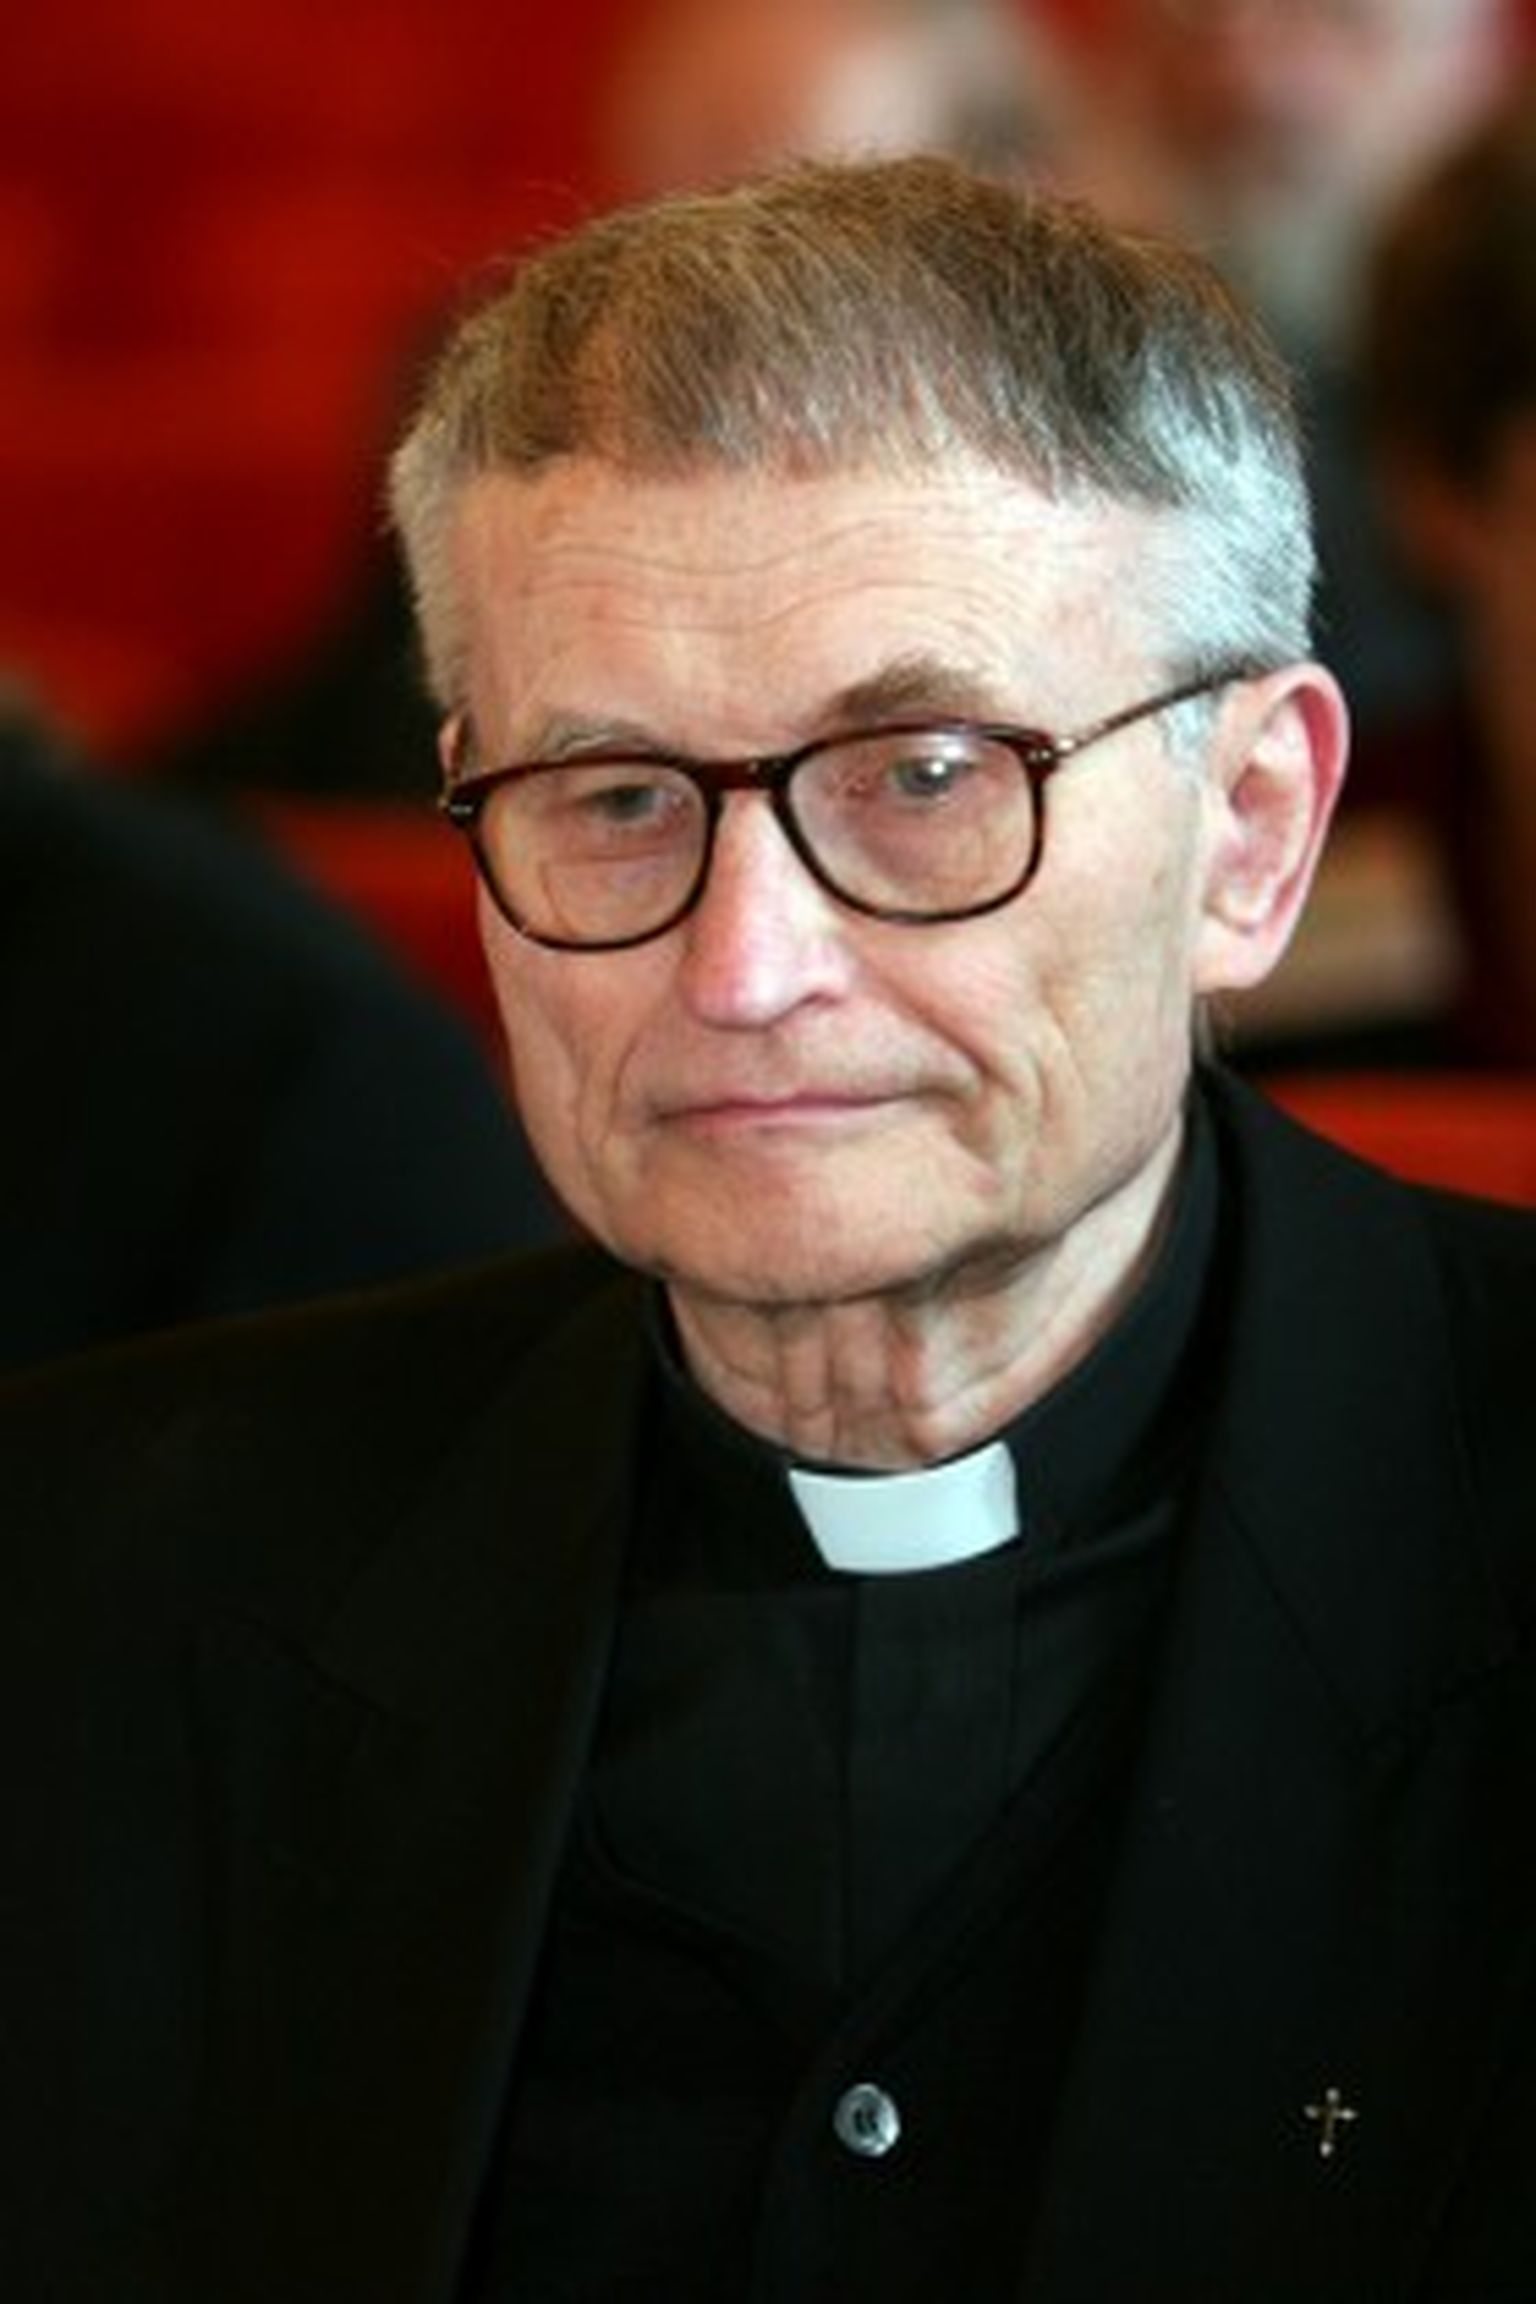 Kardināls Jānis Pujats